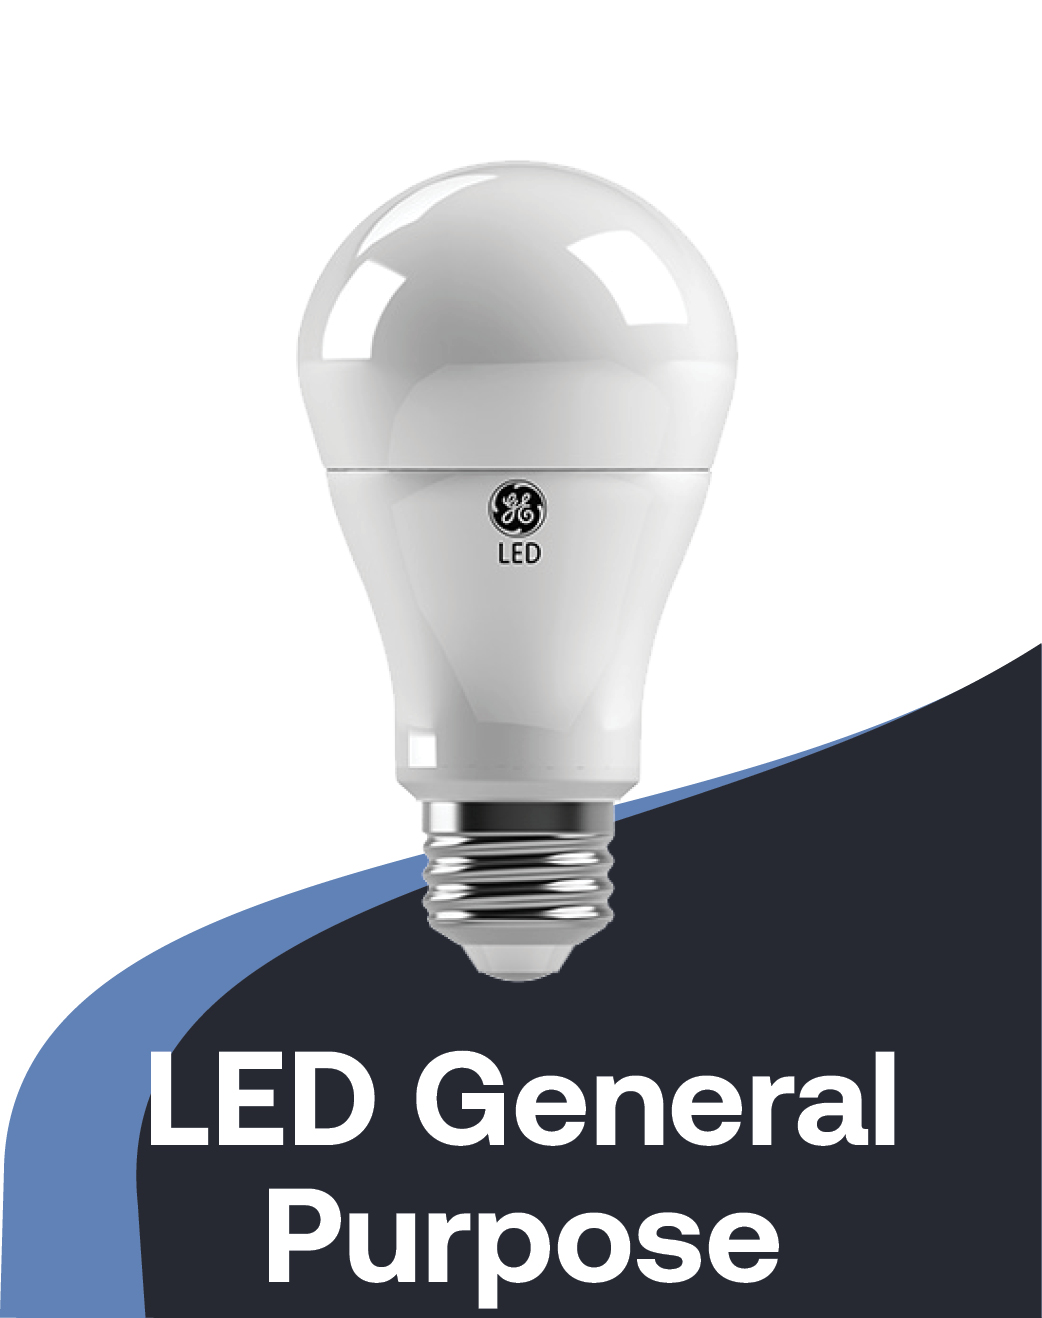 LED General Purpose